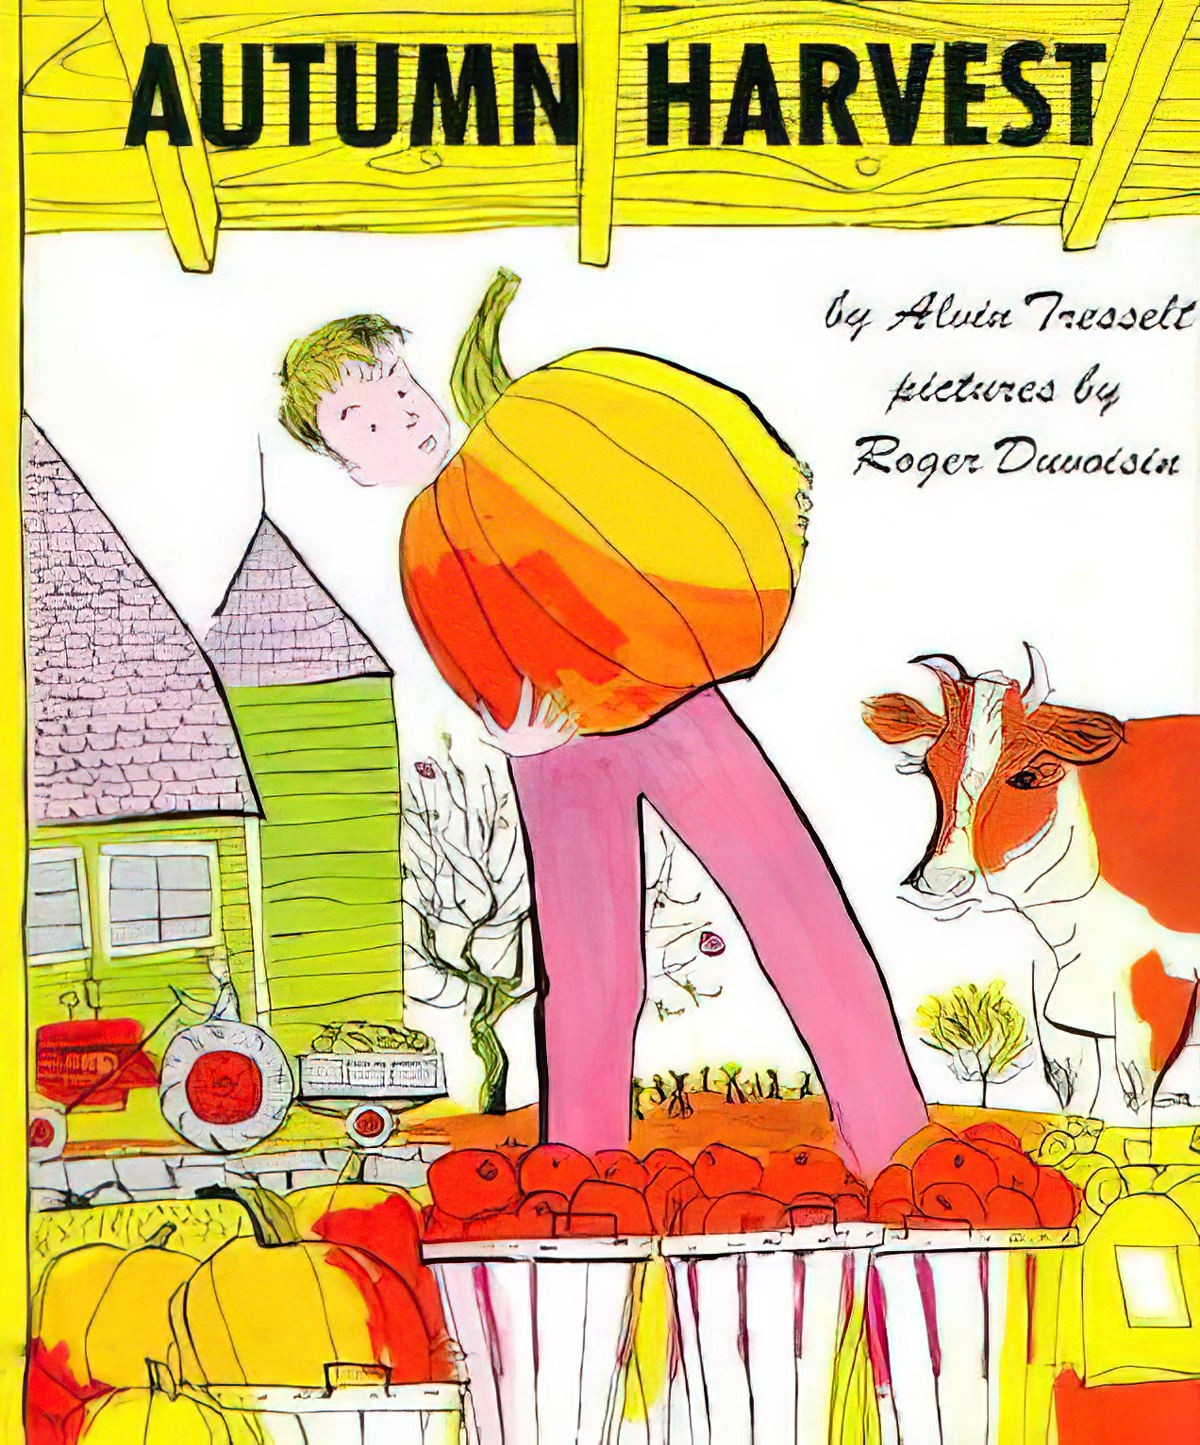 Autumn Harvest by Alvin Tresselt and Roger Duvoisin 1951